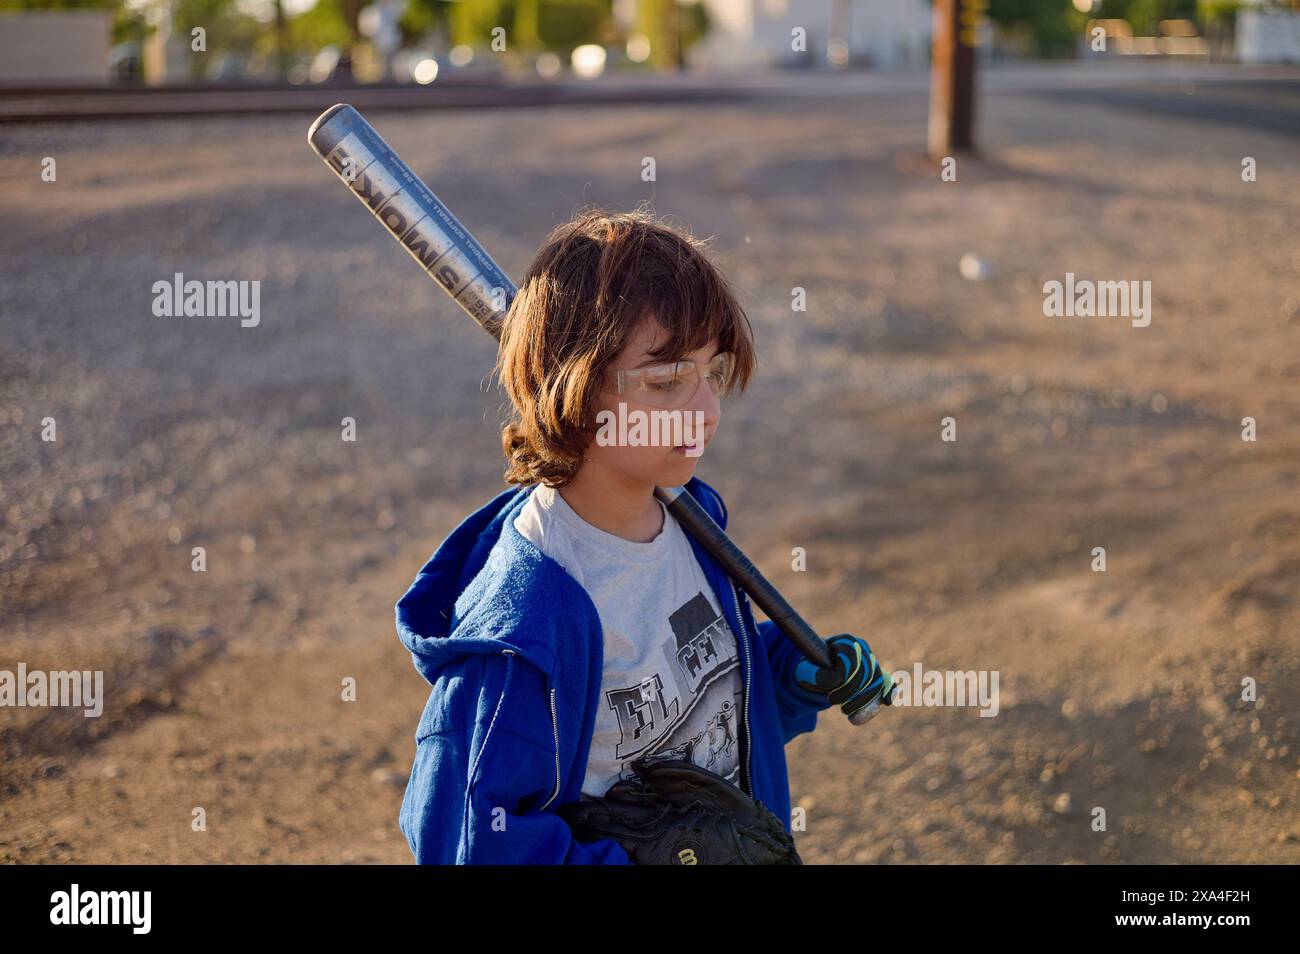 Un enfant avec des lunettes, portant une veste bleue et tenant une batte de baseball sur son épaule, se tient sur une route poussiéreuse au coucher du soleil. Banque D'Images